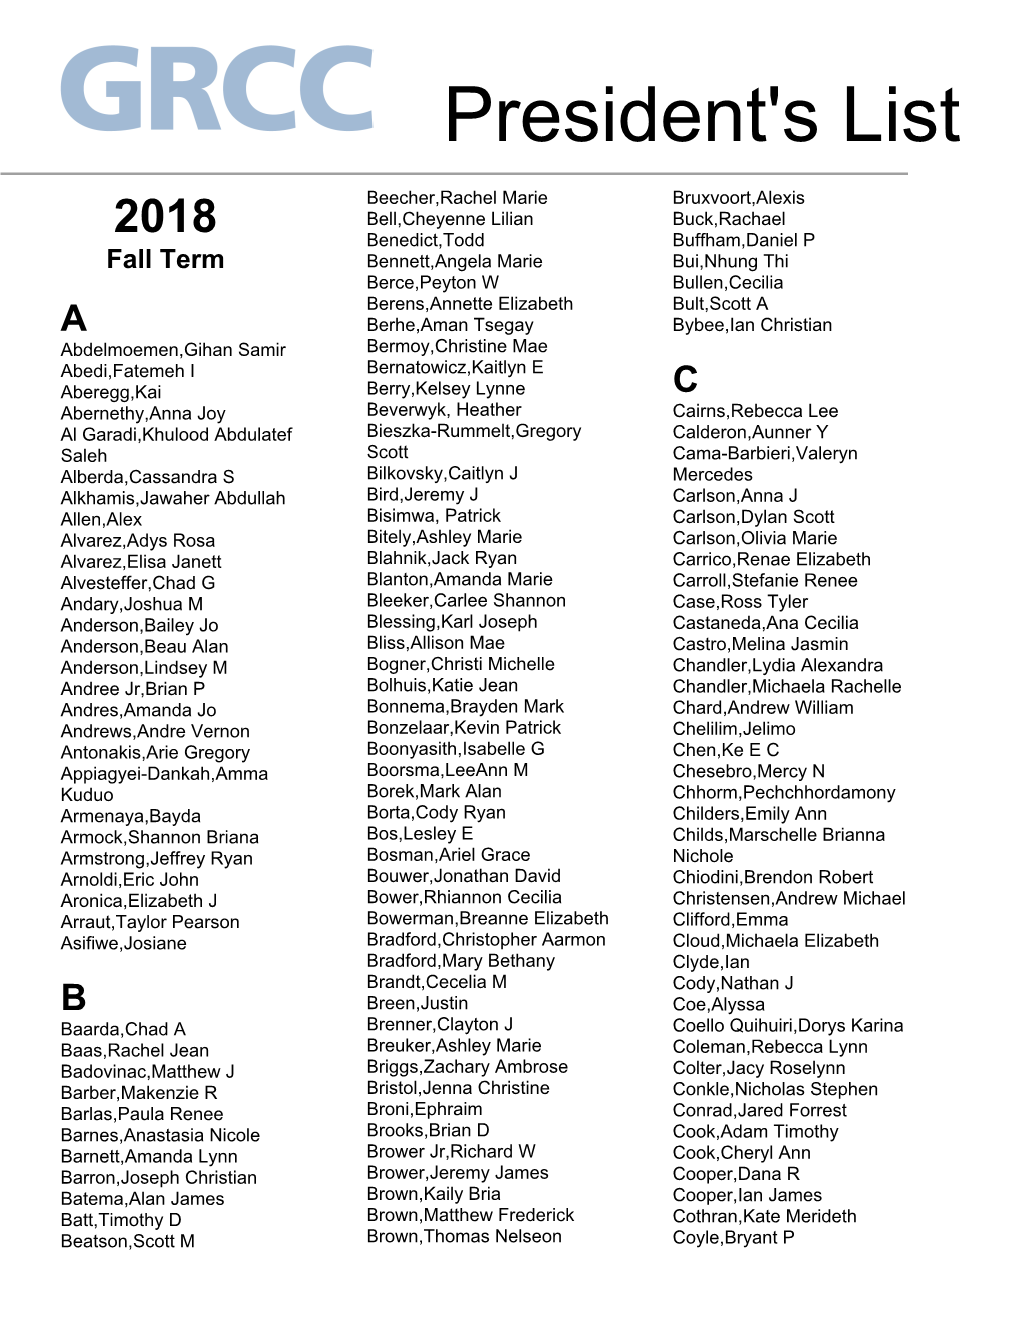 GRCC 2018 President's List